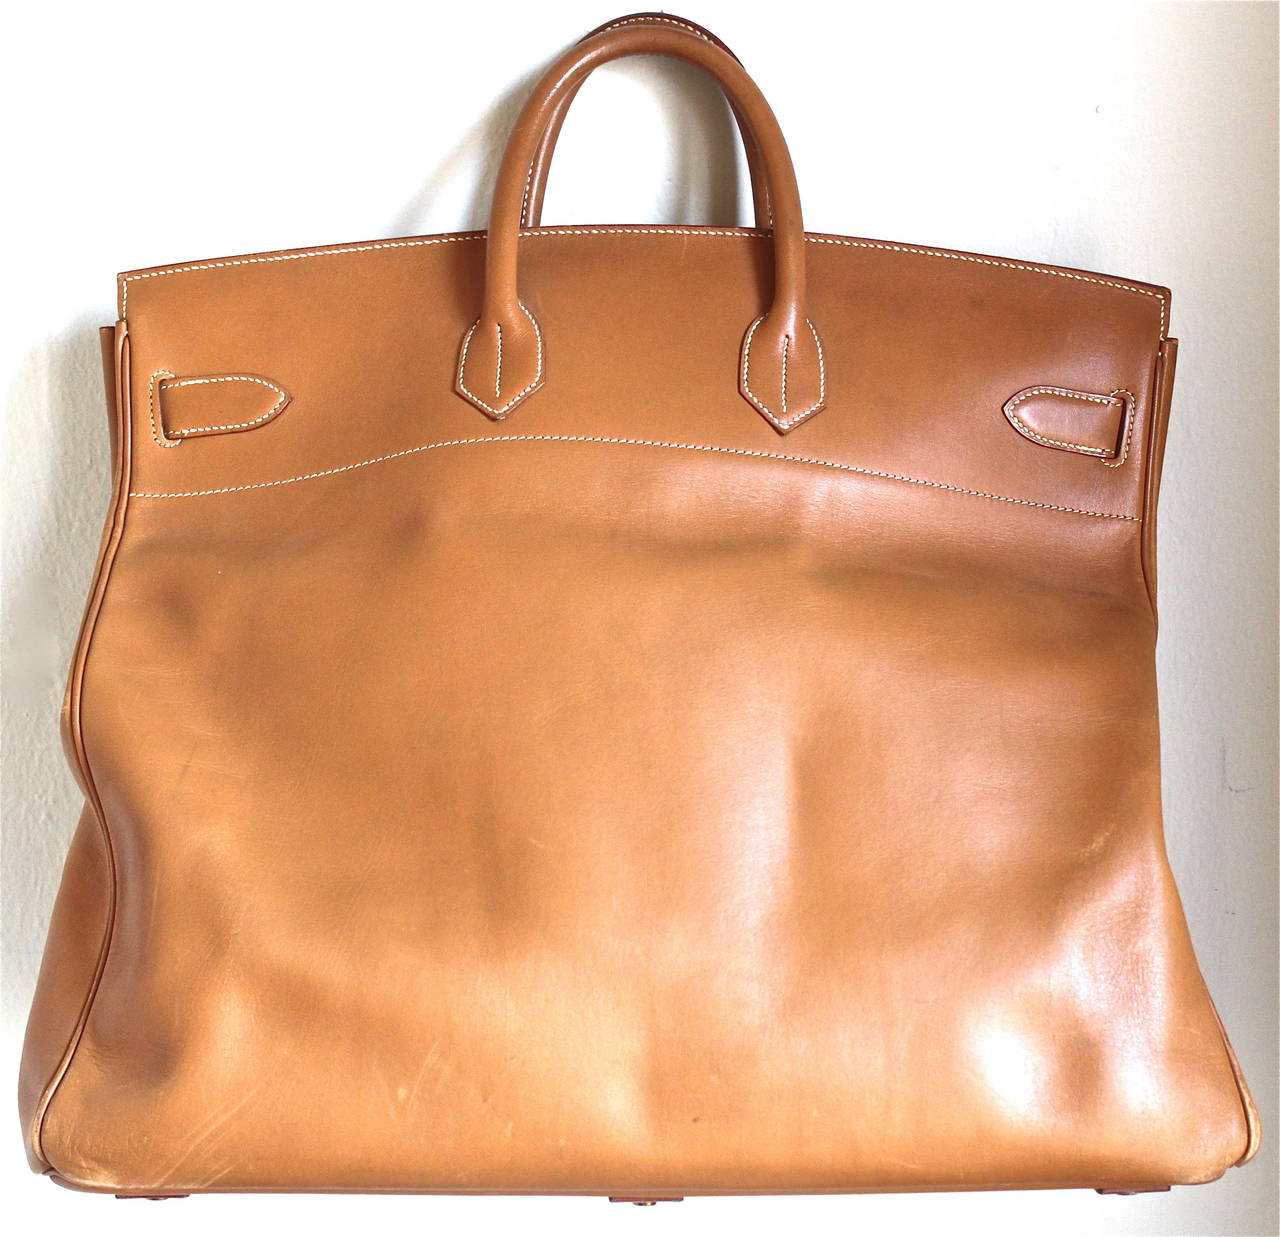 Hermès Haut à Courroies - Travel Bag second hand prices